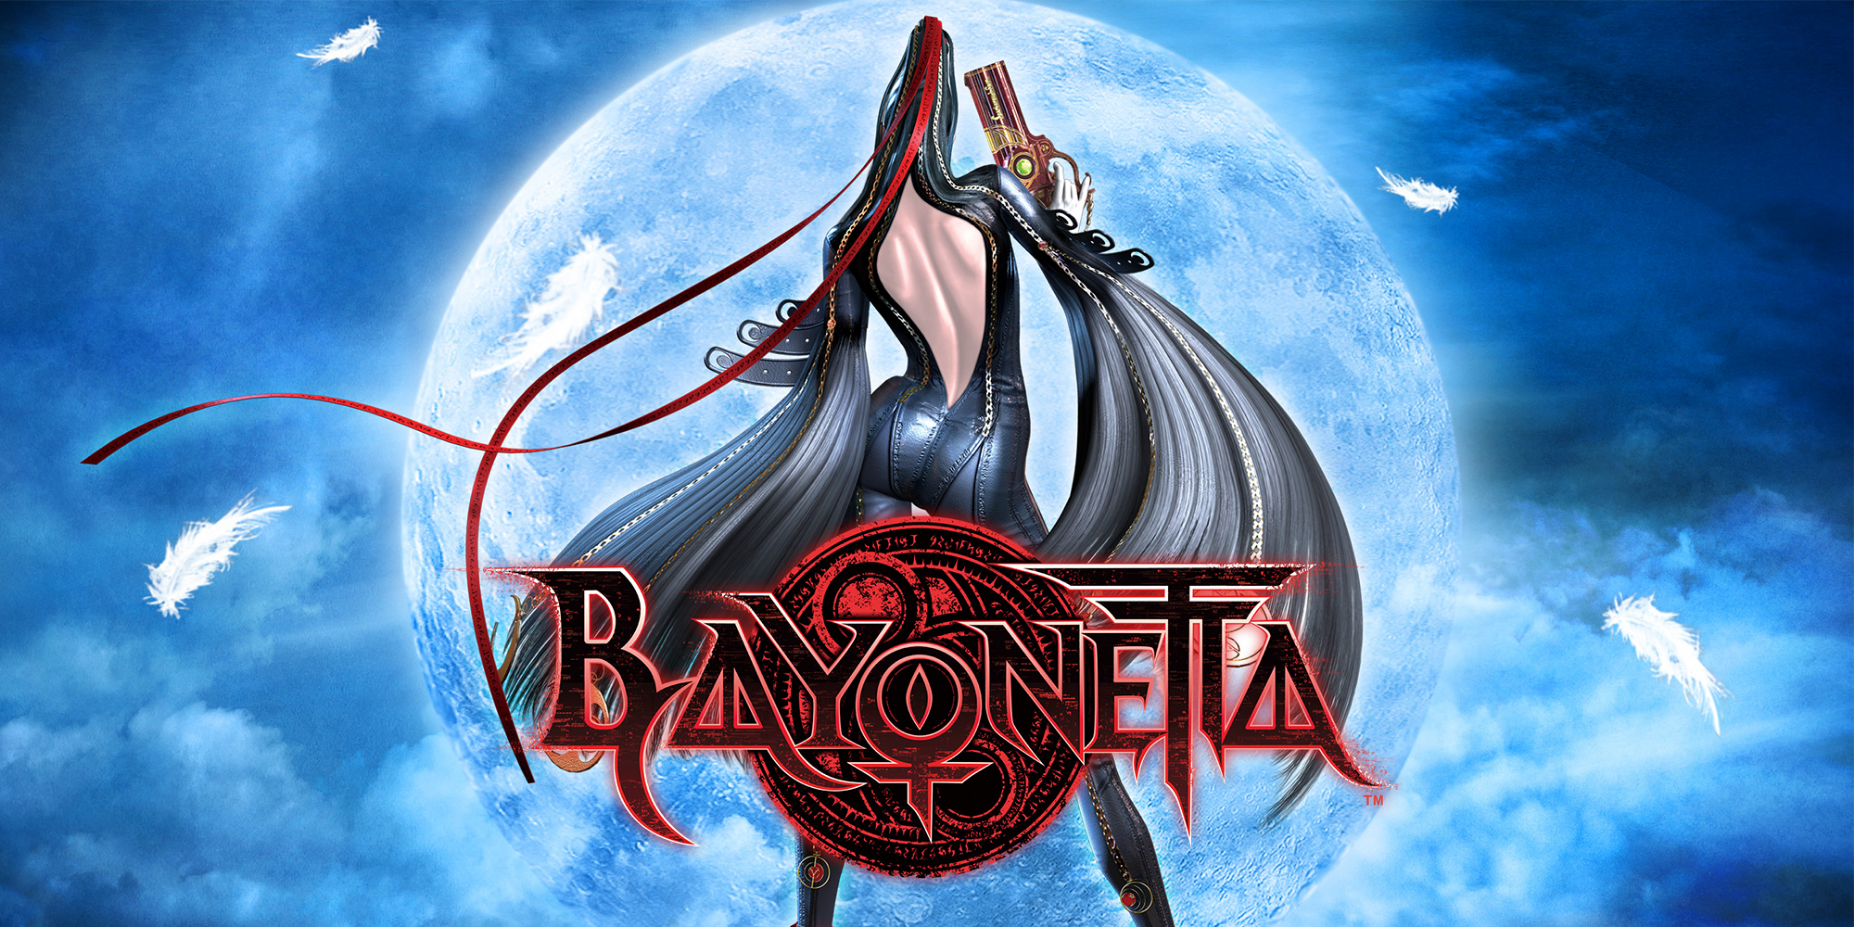 Bayonetta - Quanto tempo leva para terminar o jogo? - Critical Hits